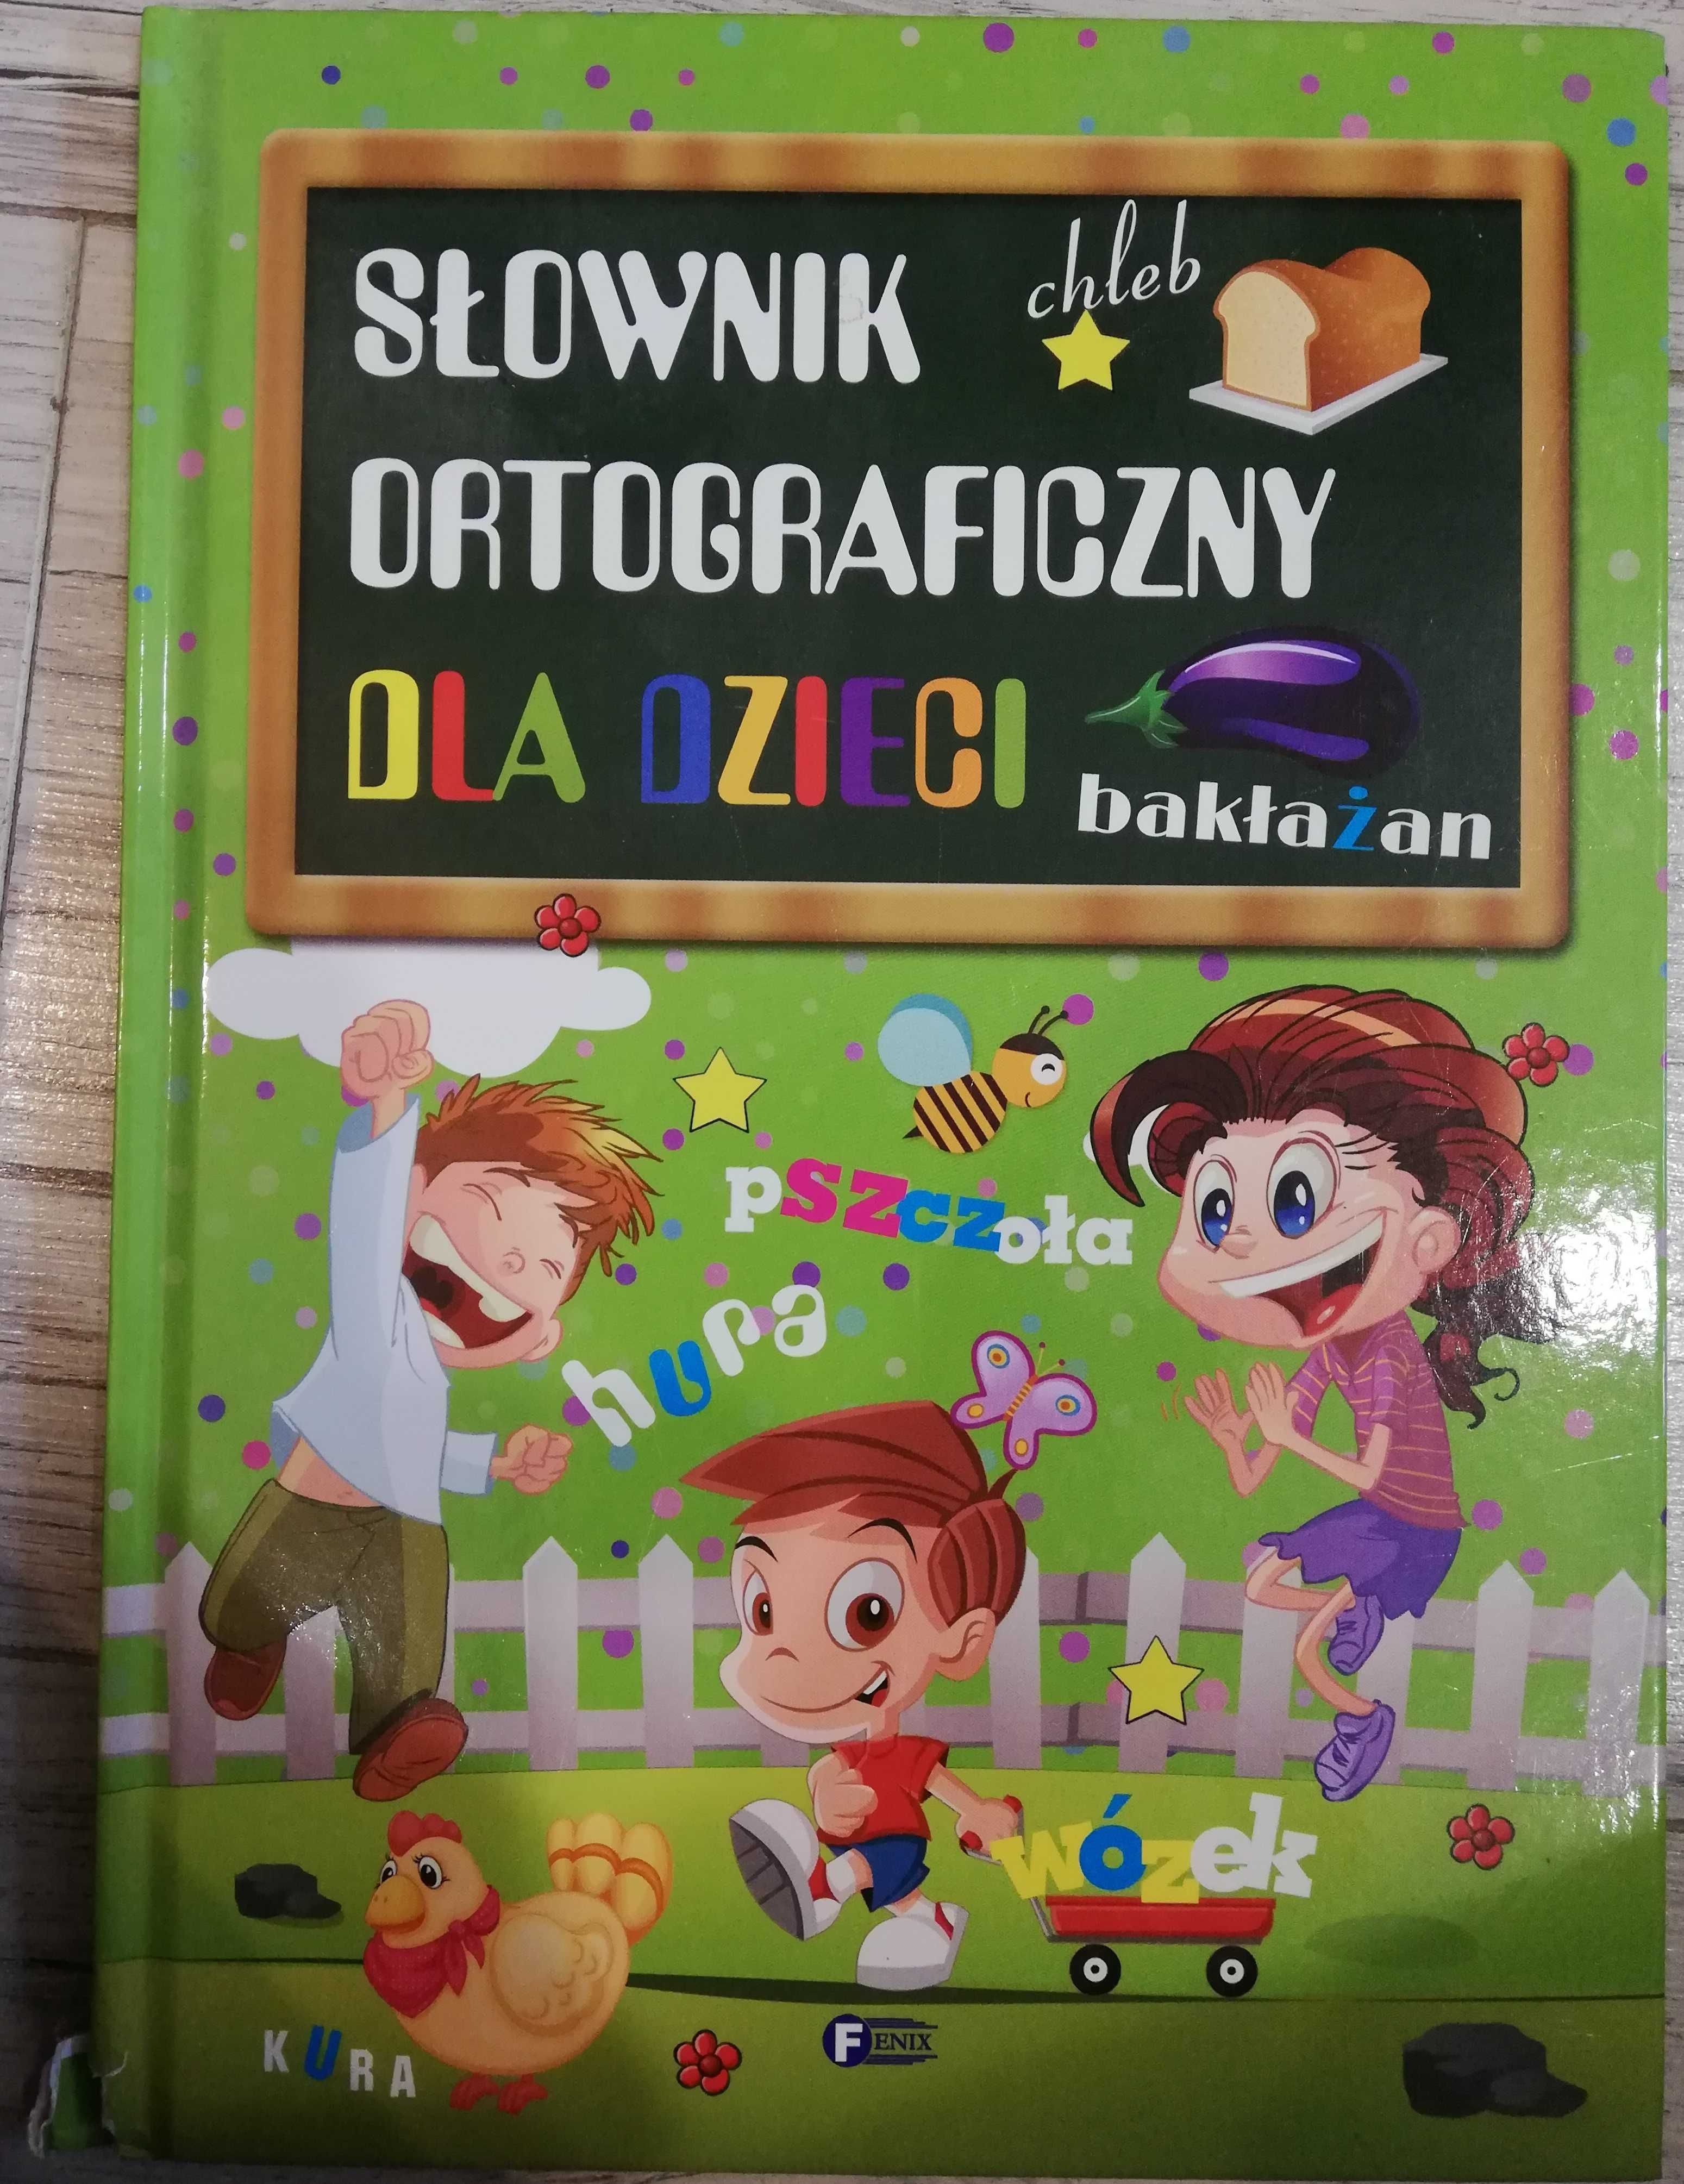 Słownik ortograficzny i matematyczny dla dzieci